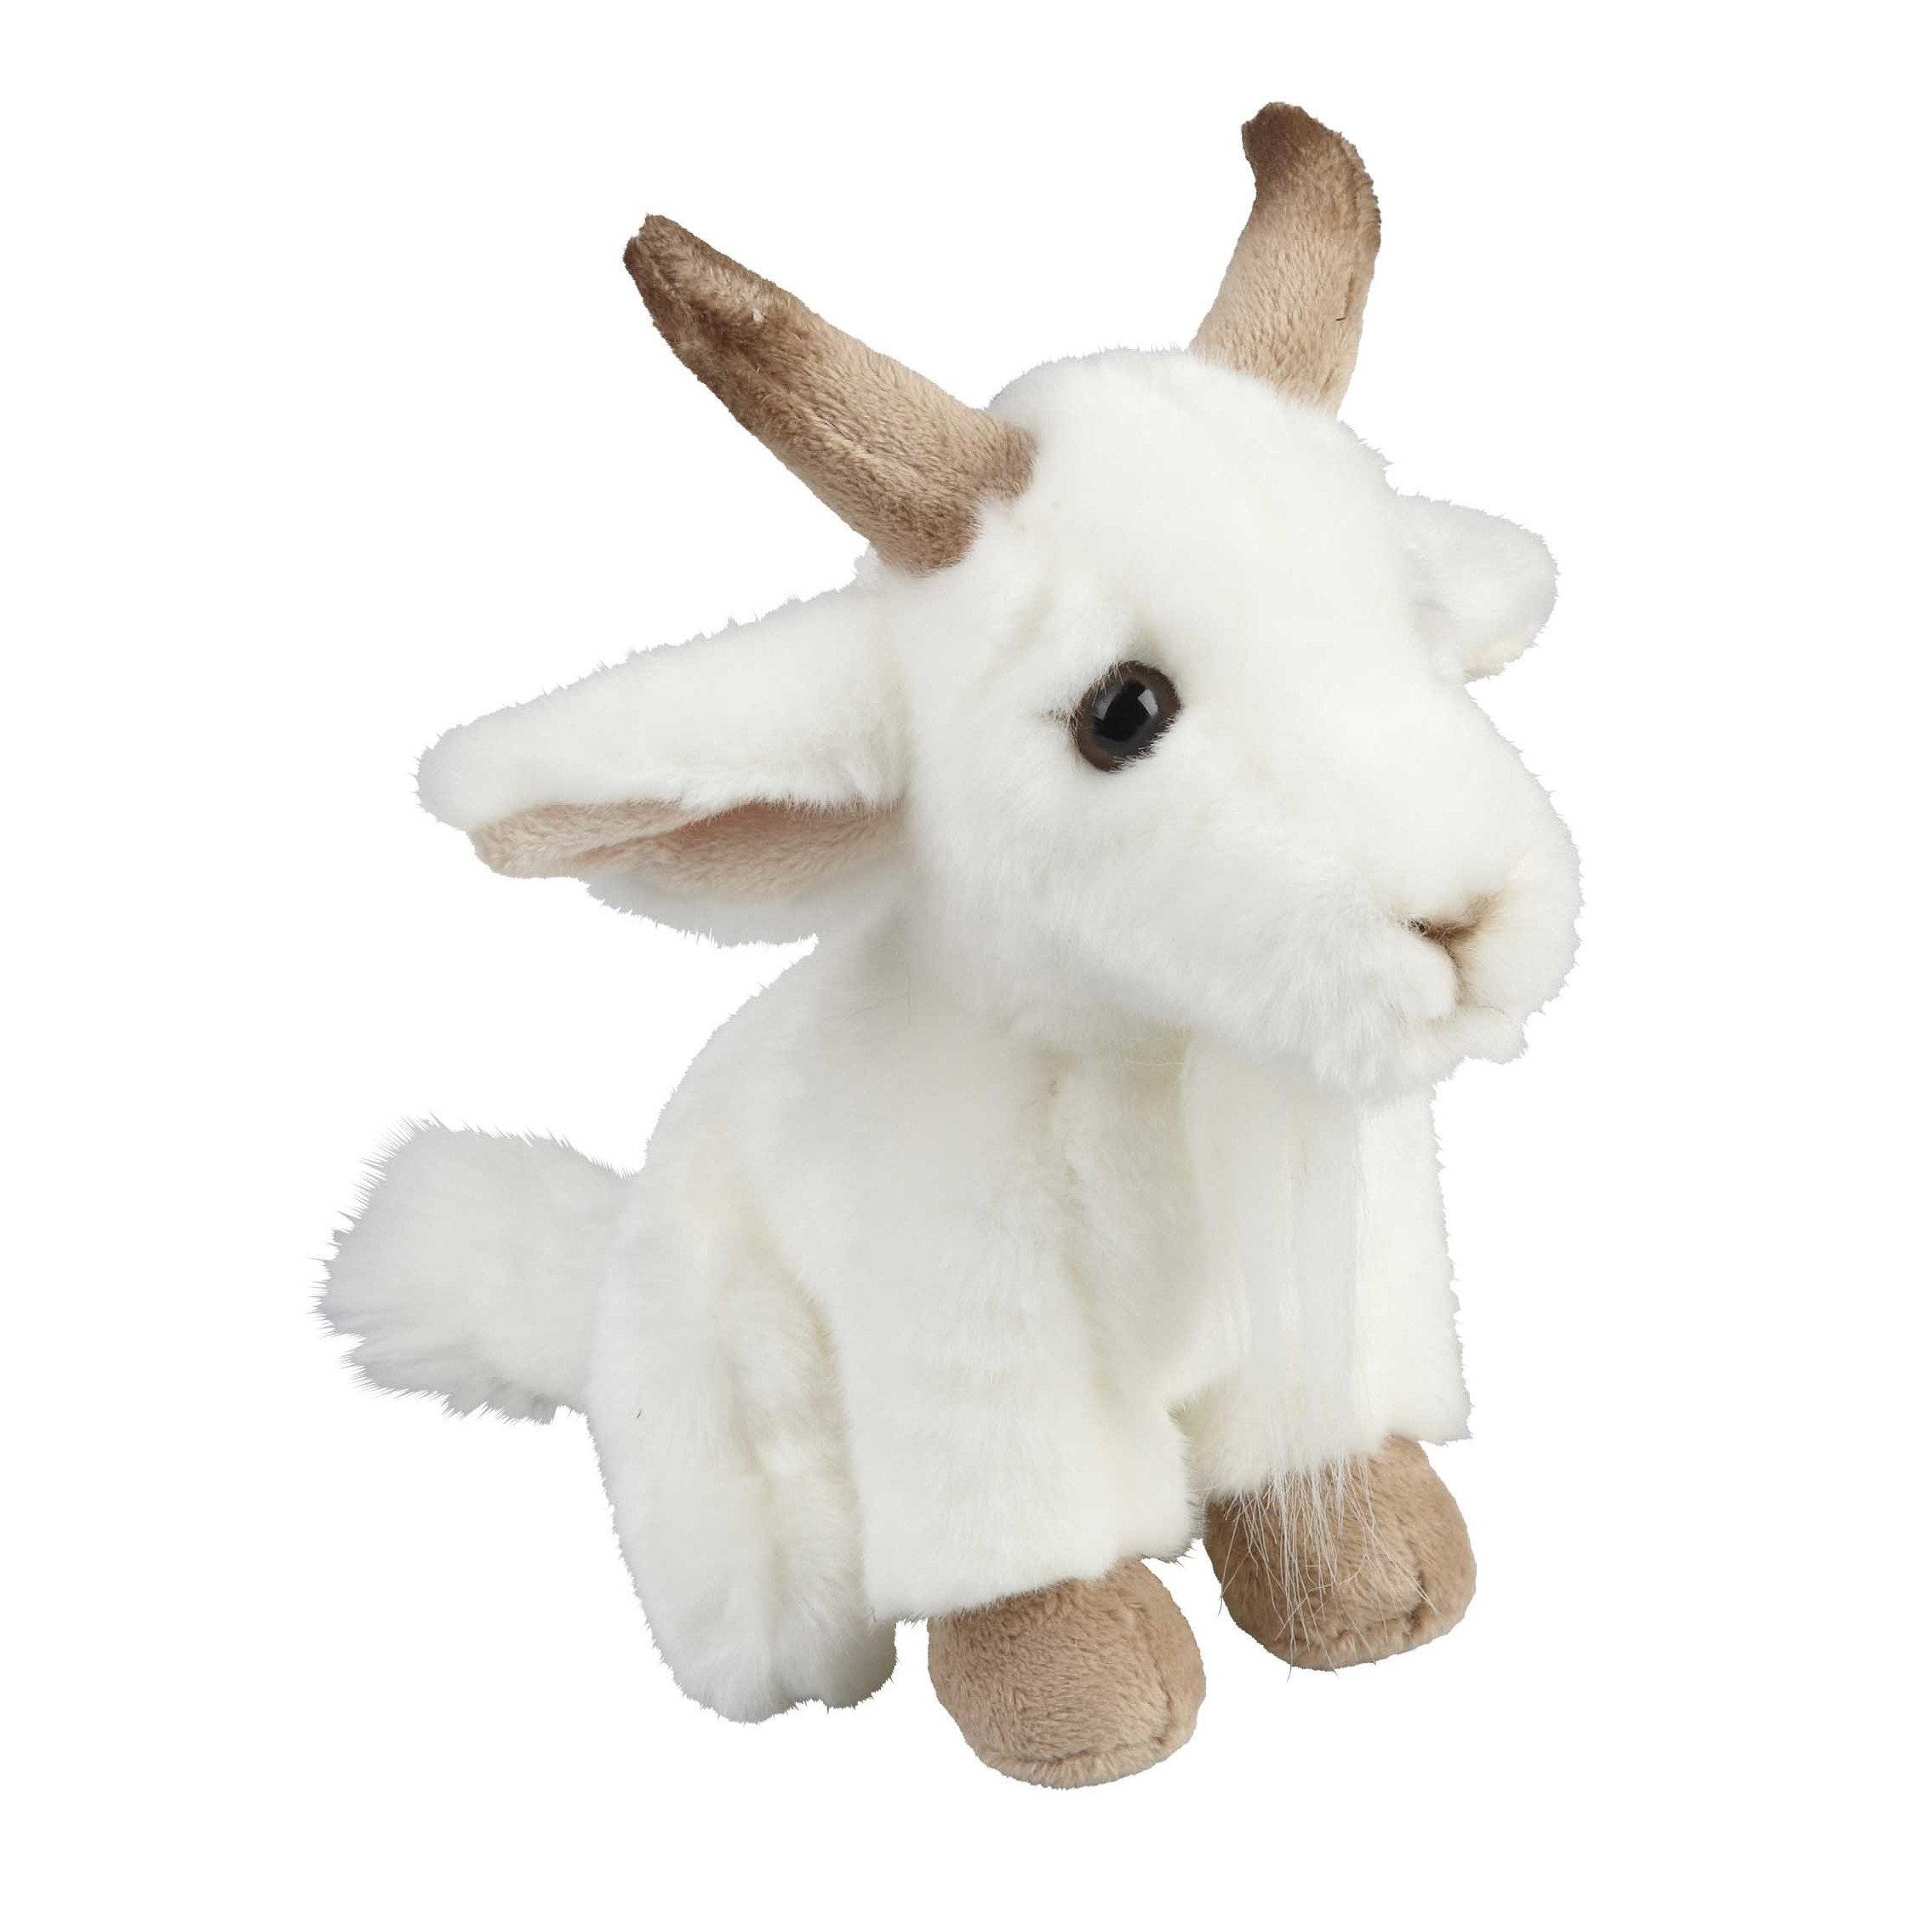 Pluche witte geit knuffel 18 cm speelgoed